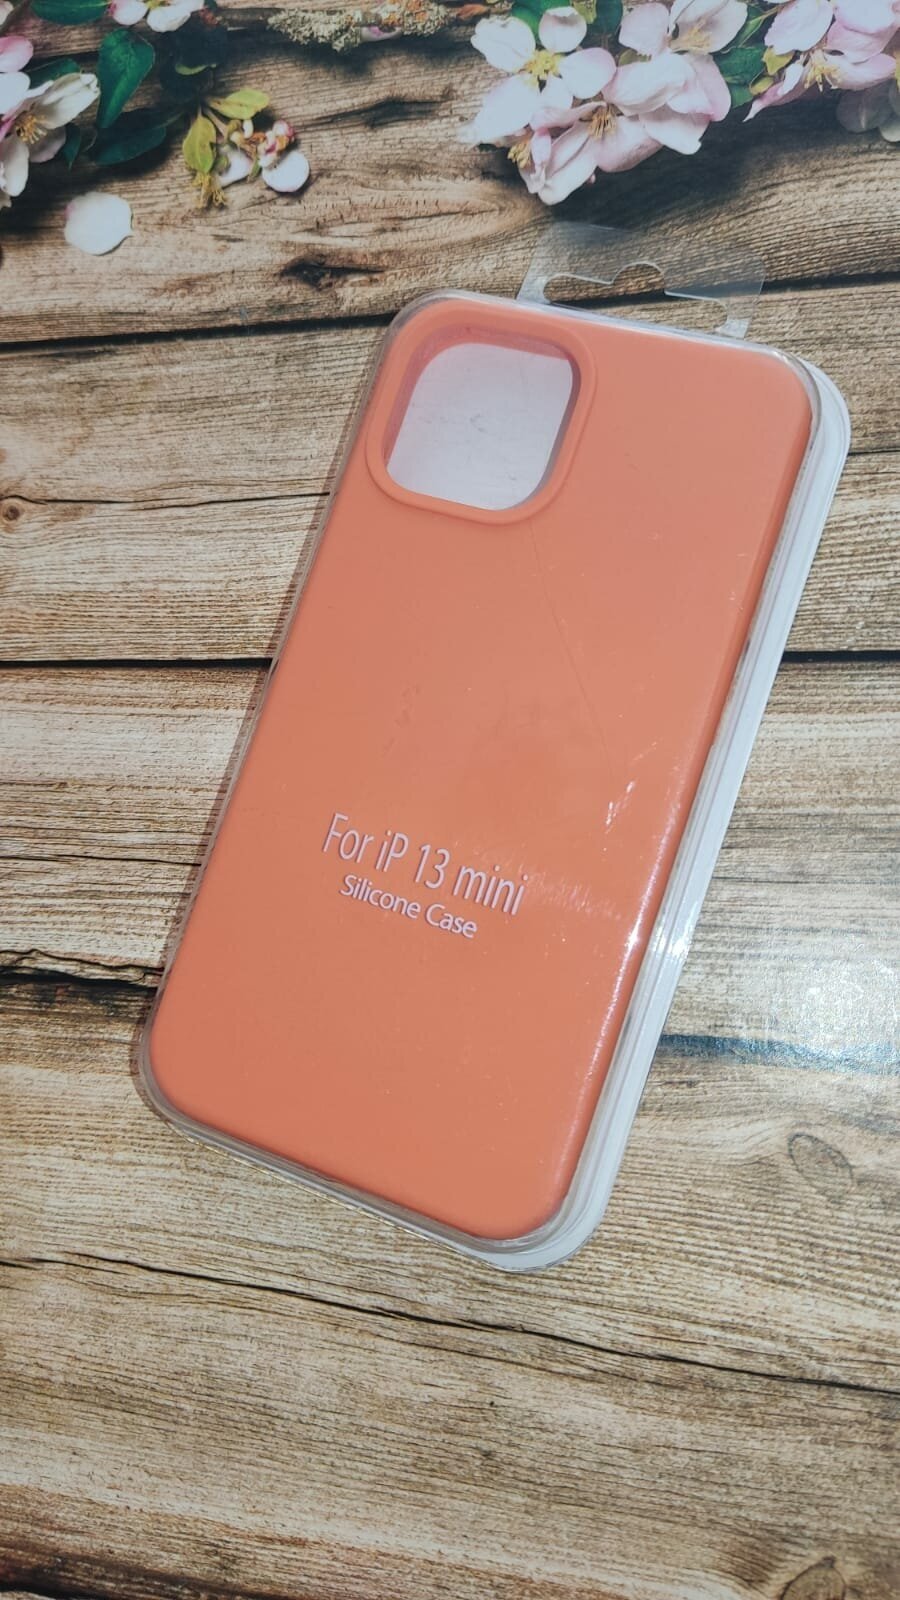 Силиконовый чехол-накладка для iPhone 12 mini, оранжевый, с микрофиброй внутри